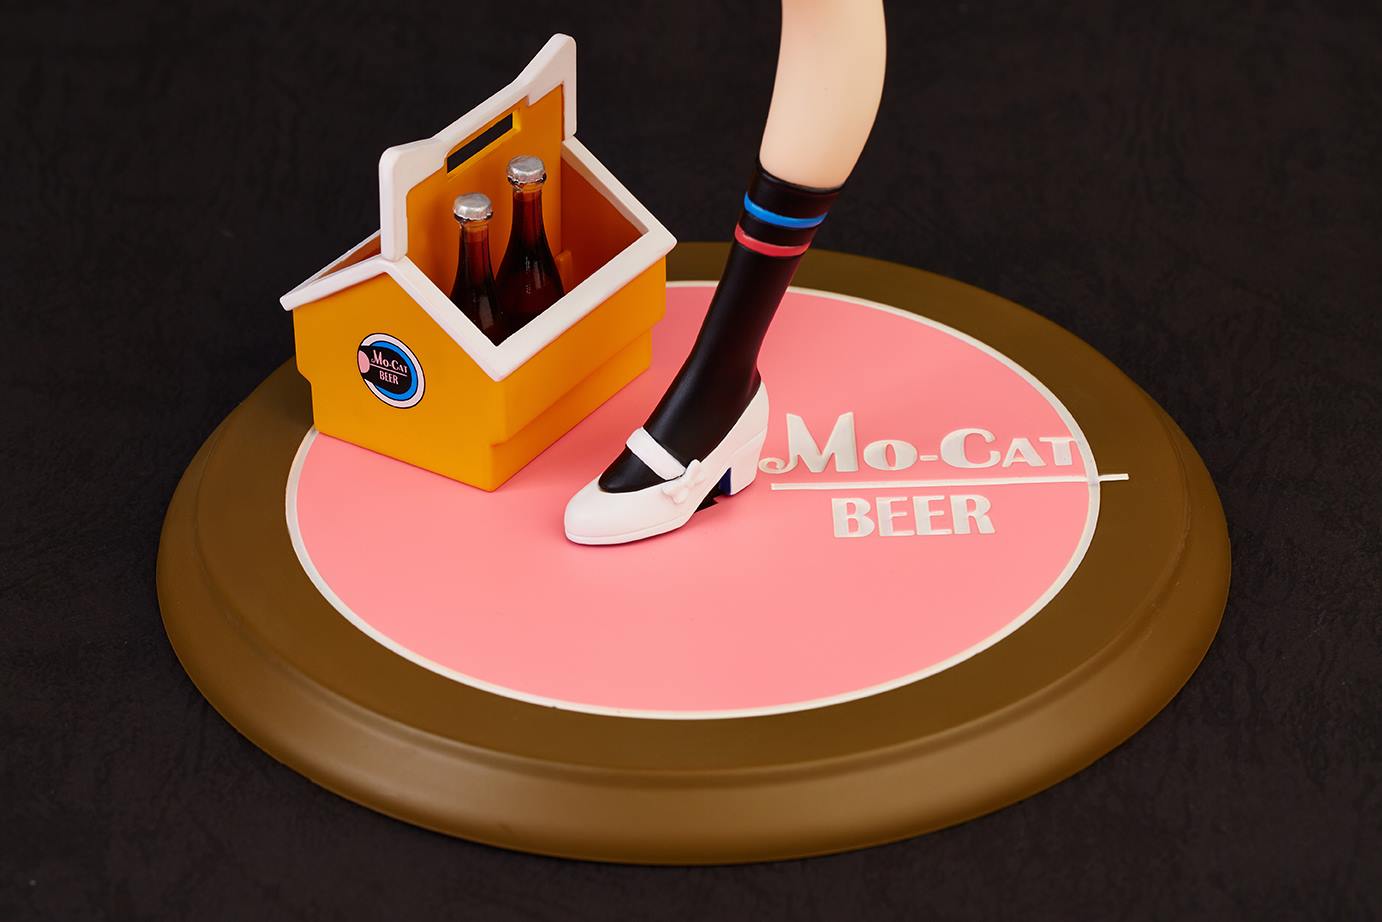 Mo-cat ビアガール イチゴちゃん